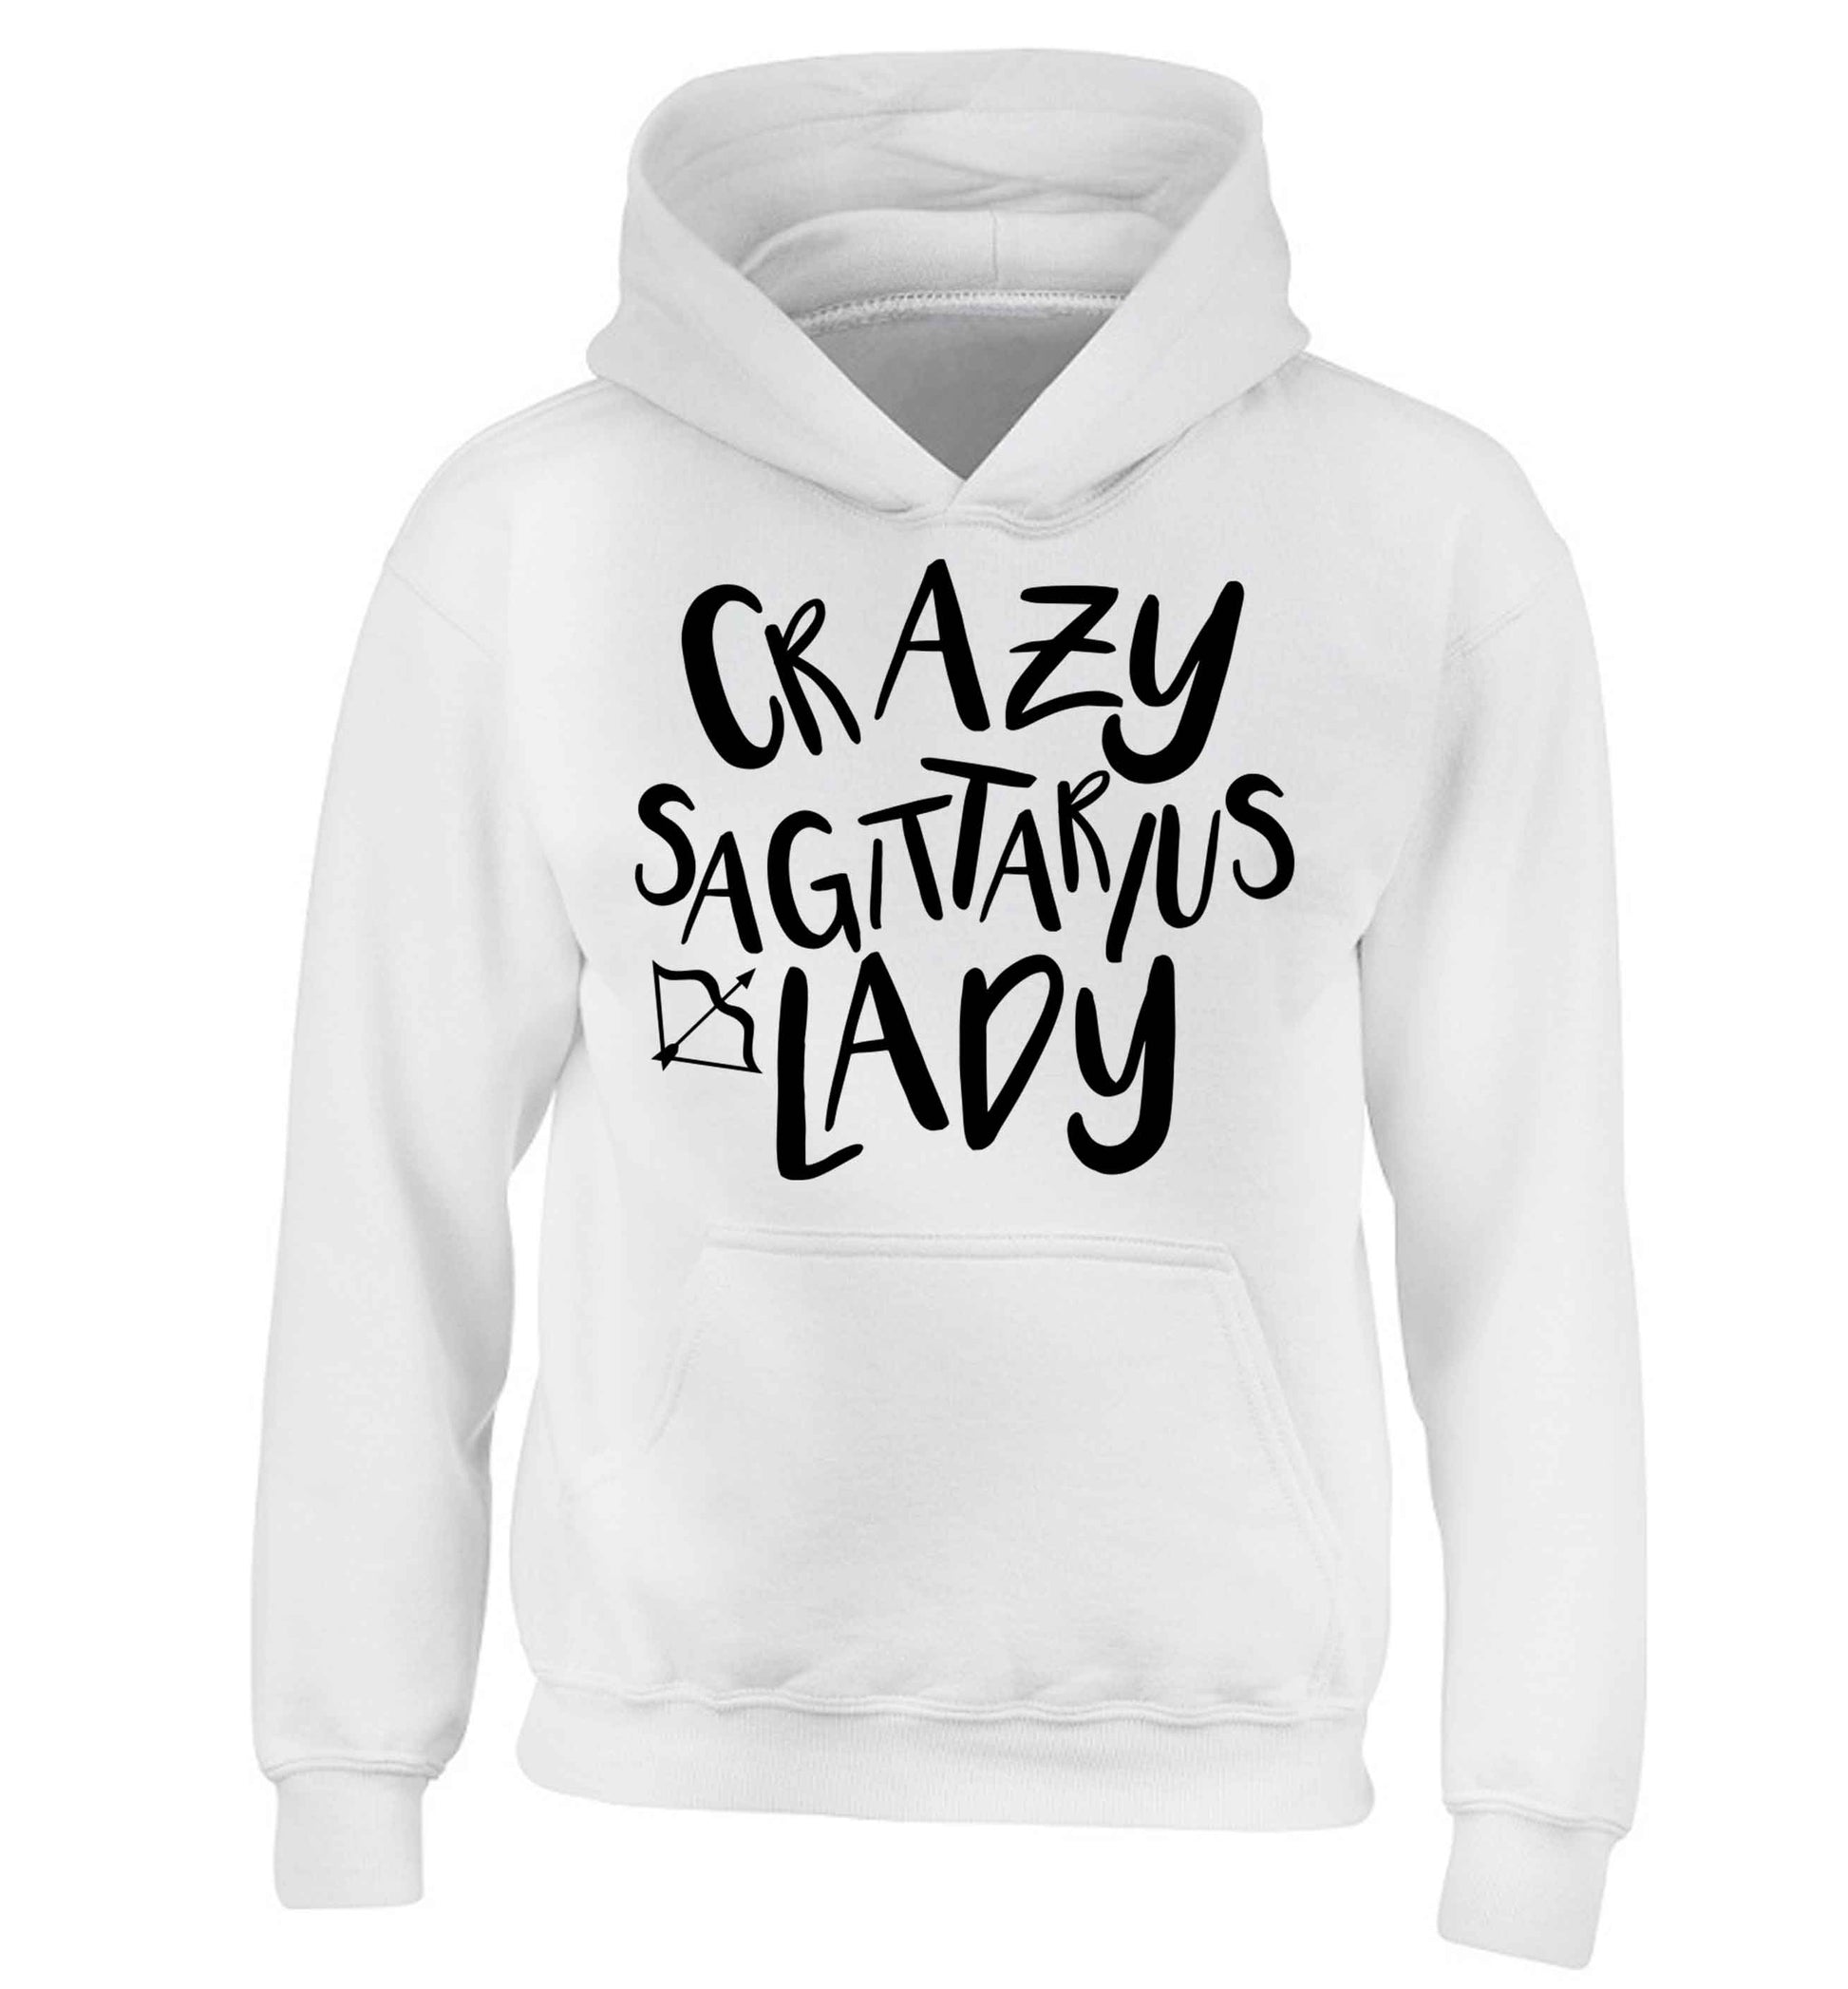 Crazy sagittarius lady children's white hoodie 12-13 Years